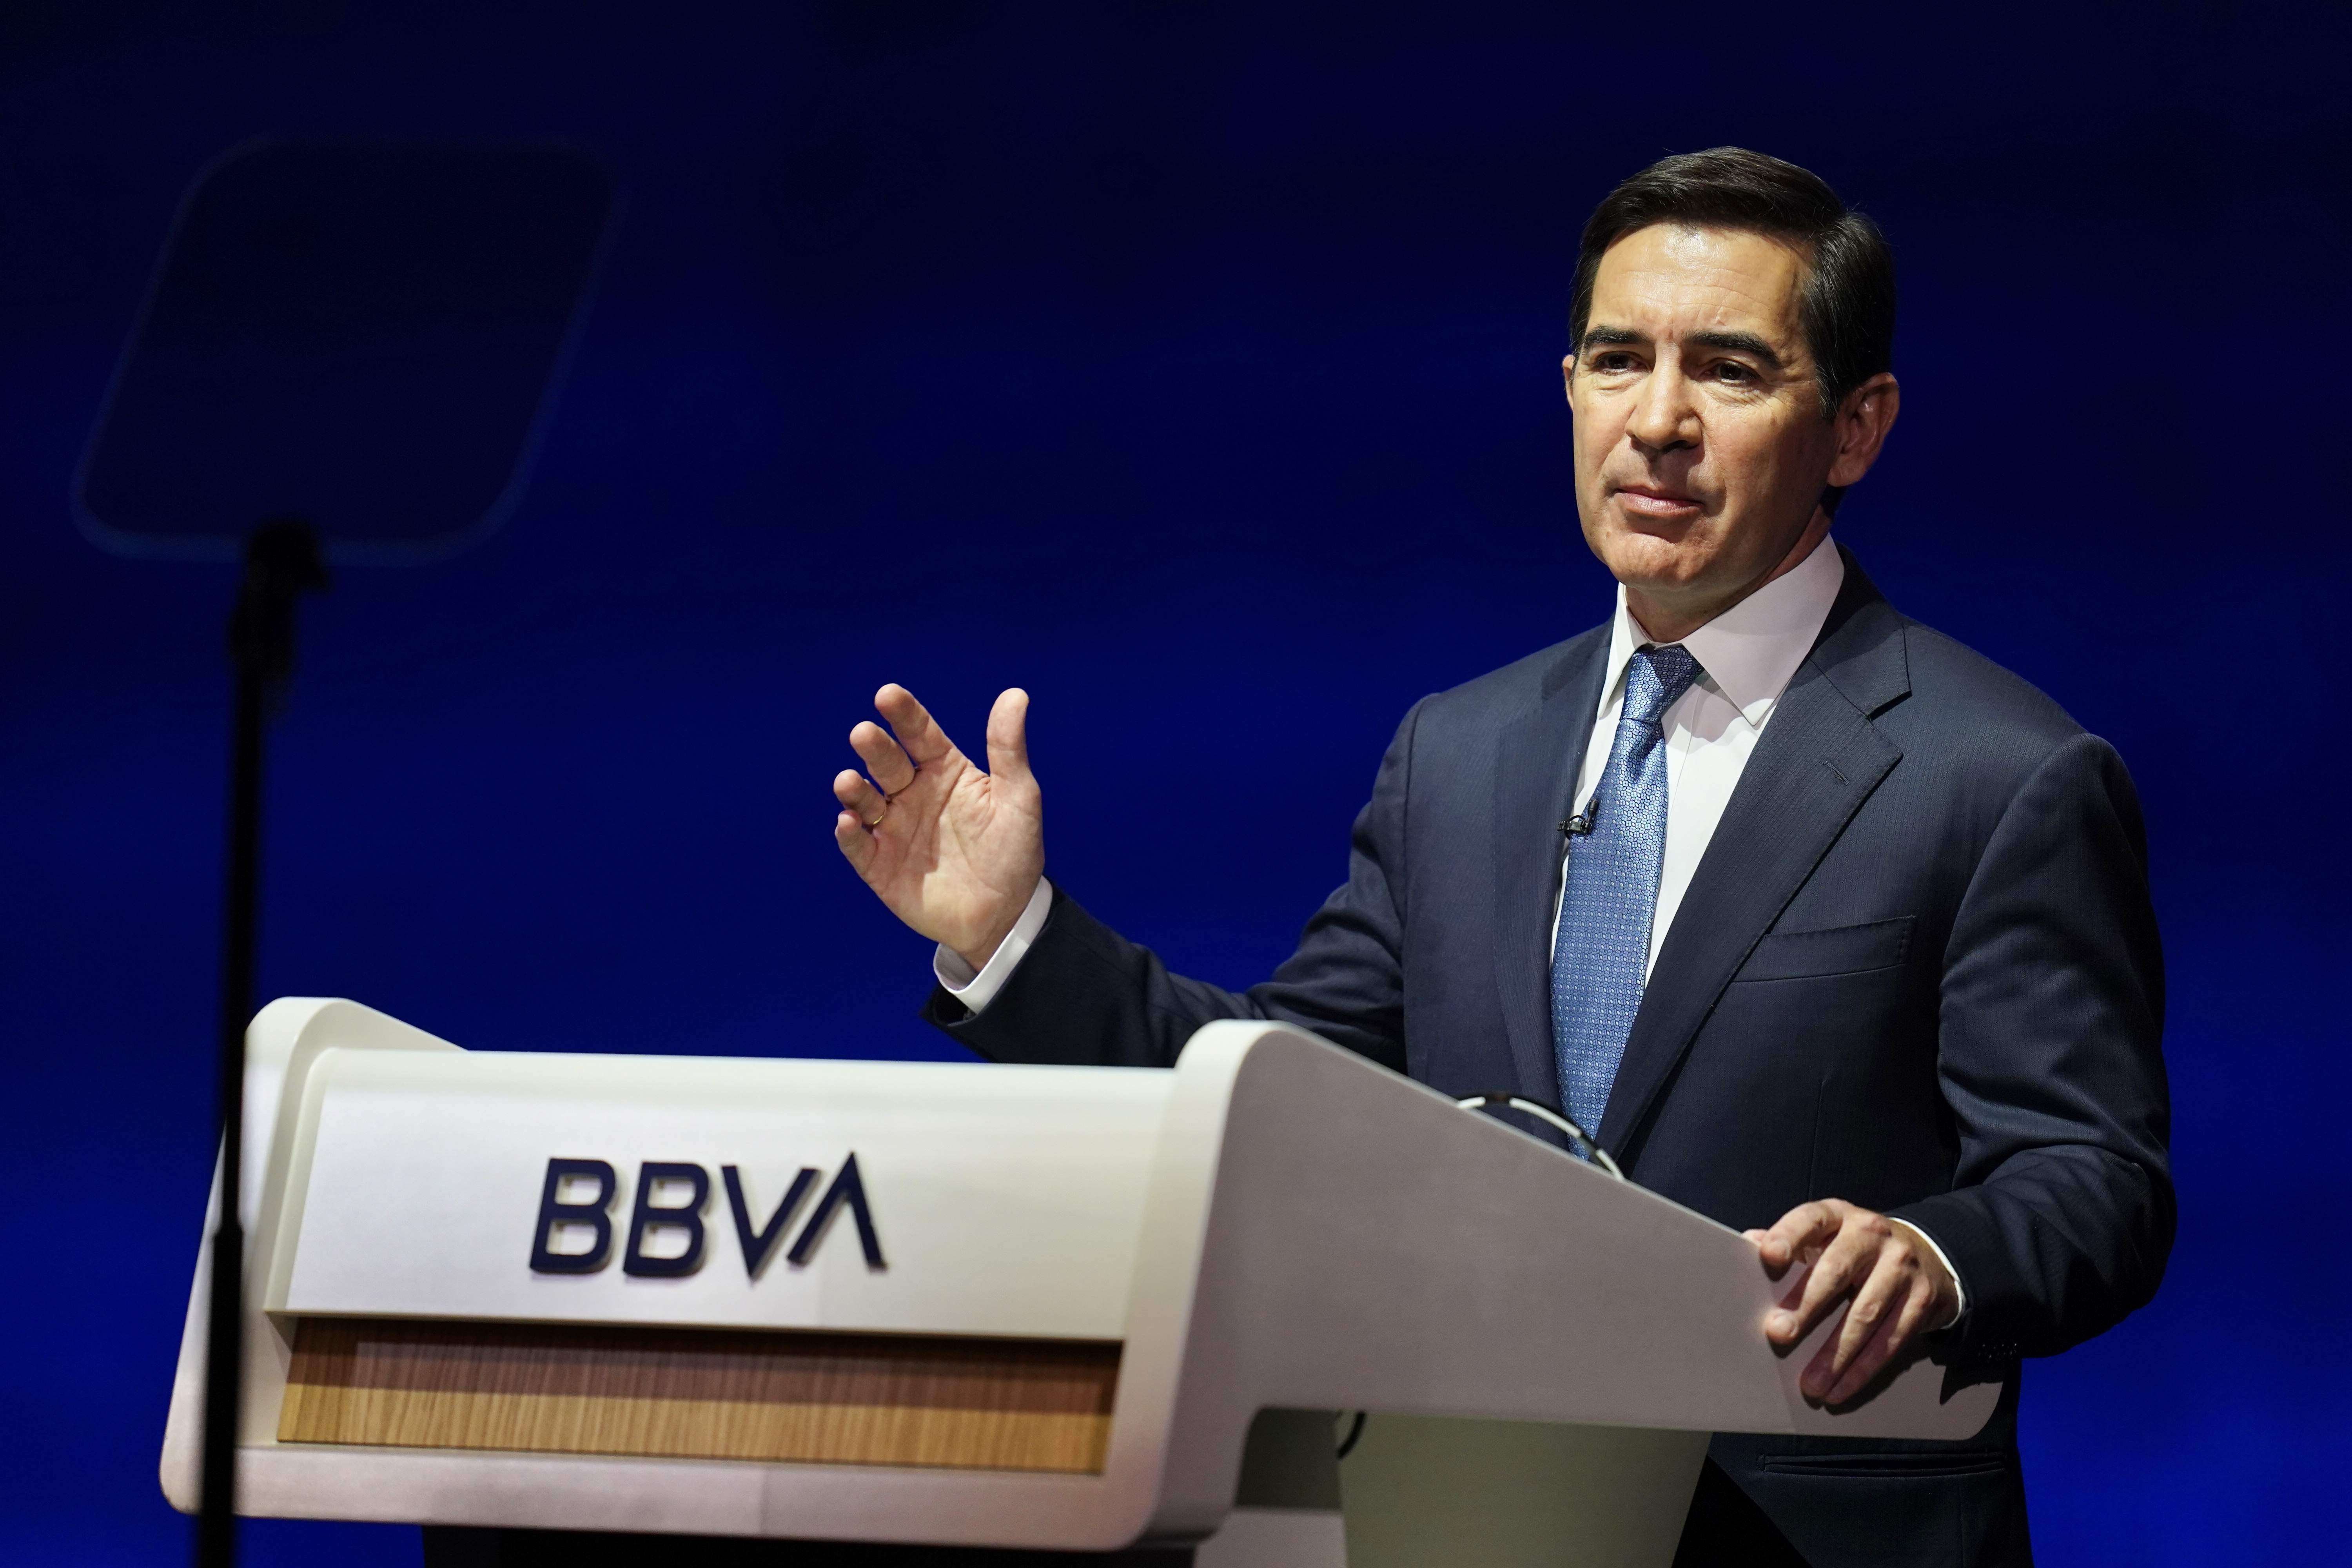 BBVA launches hostile takeover bid for Sabadell